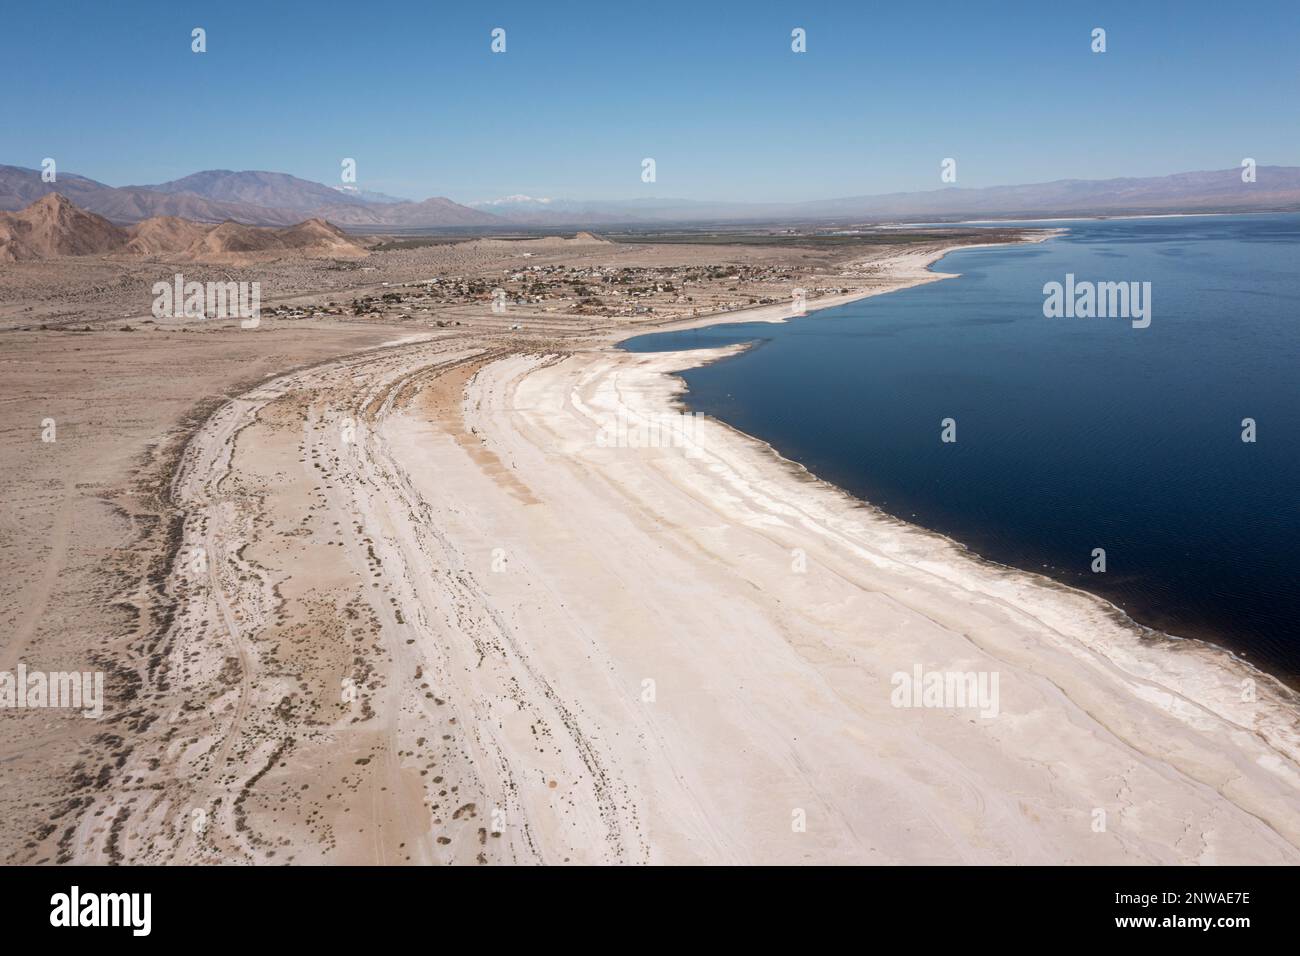 La mer de Salton en Californie se rétrécit rapidement en raison d'une sécheresse persistante. Les toxines dans le lit lacéré nouvellement exposé ont créé une crise majeure de santé publique. Banque D'Images